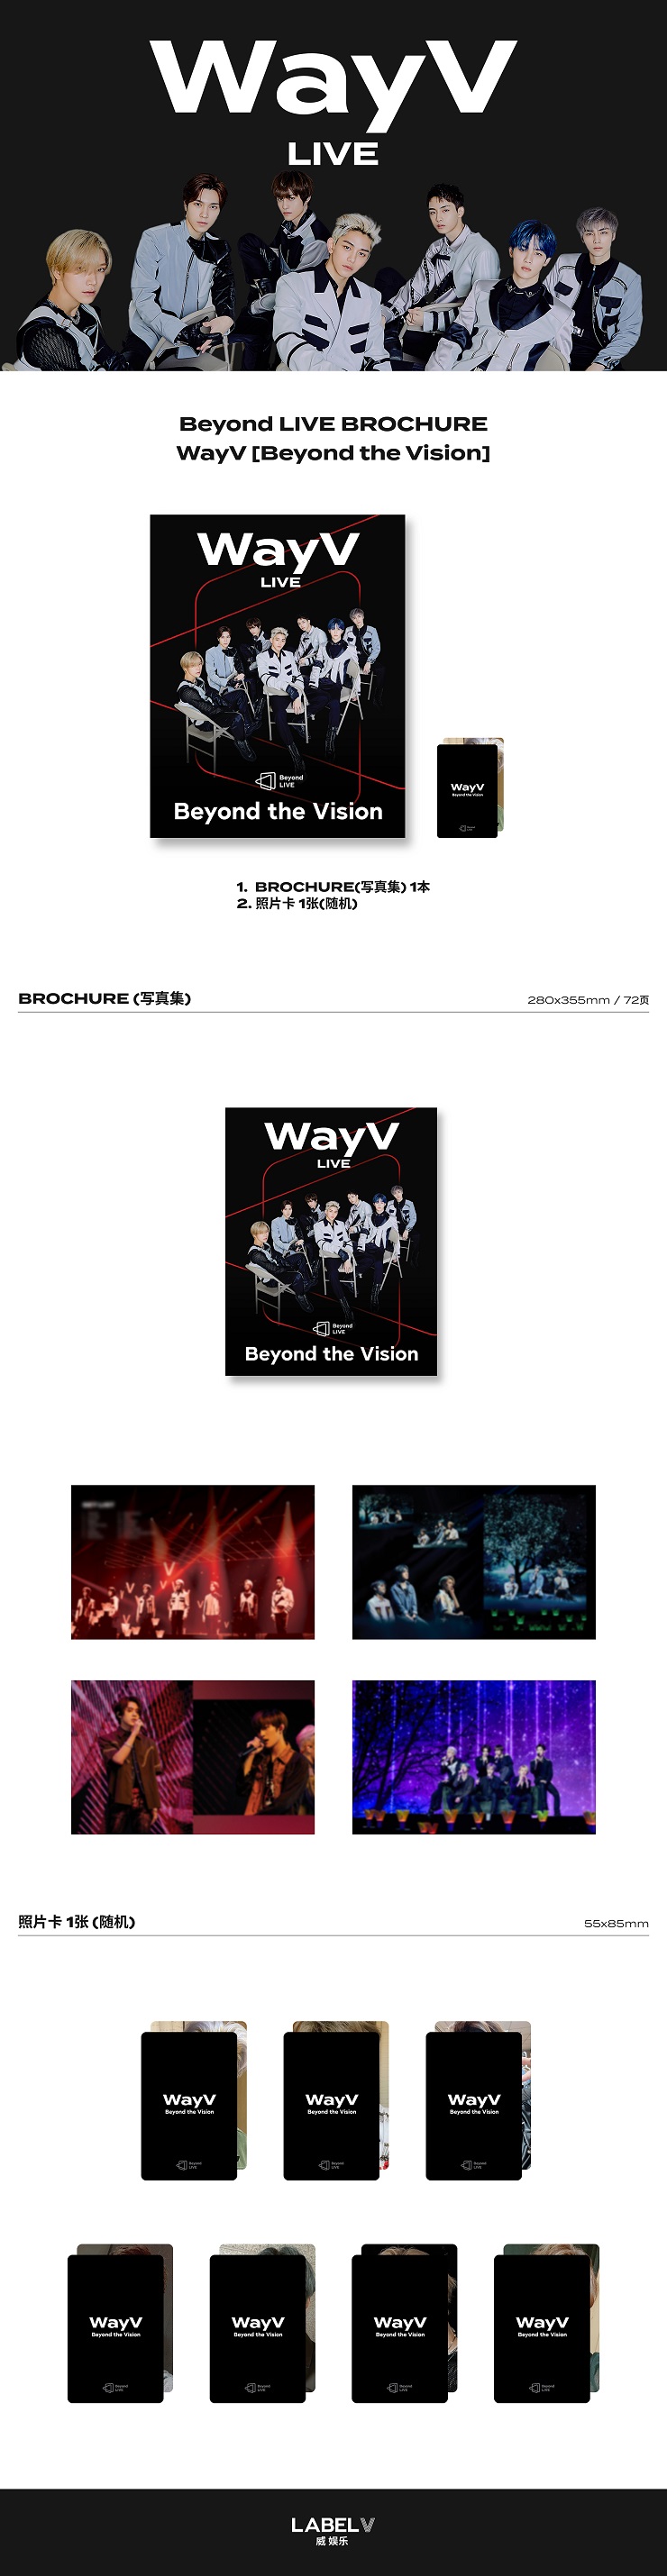 WayV - Beyond LIVE BROCHURE WayV [Beyond the Vision]